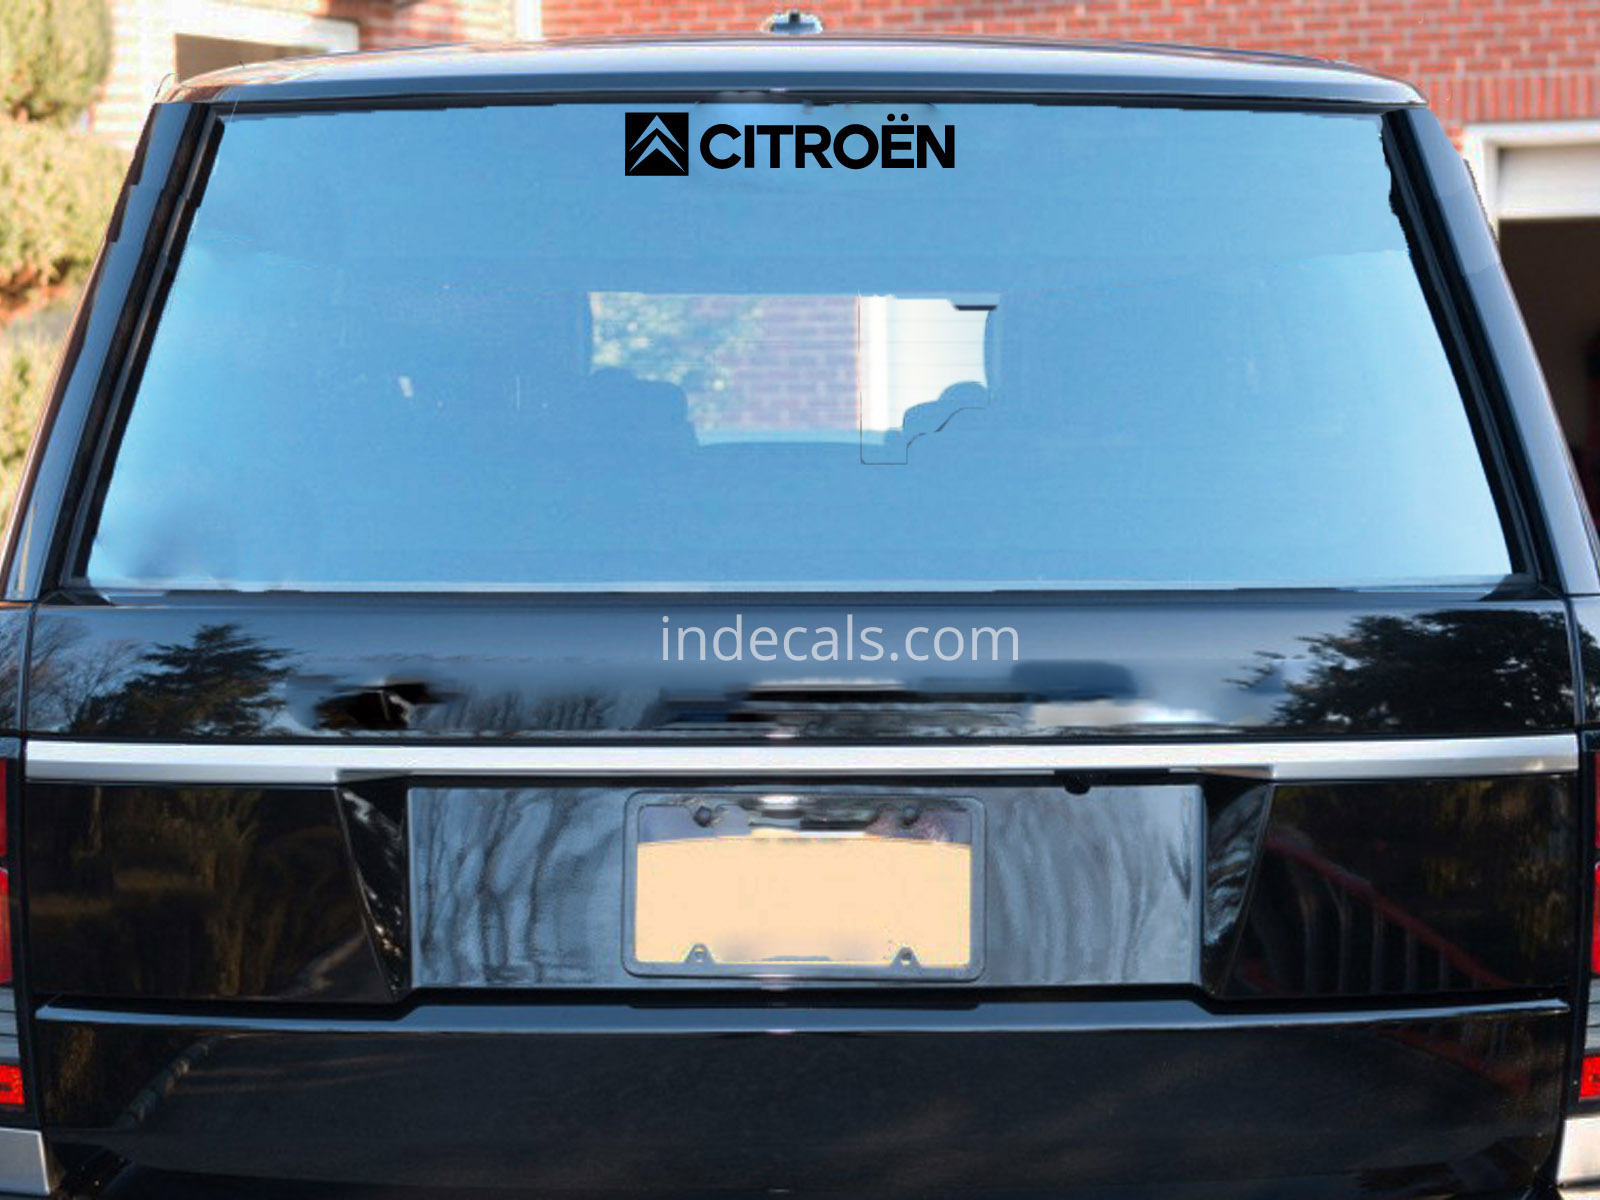 1 x Citroen Sticker for Windshield or Back Window - Black